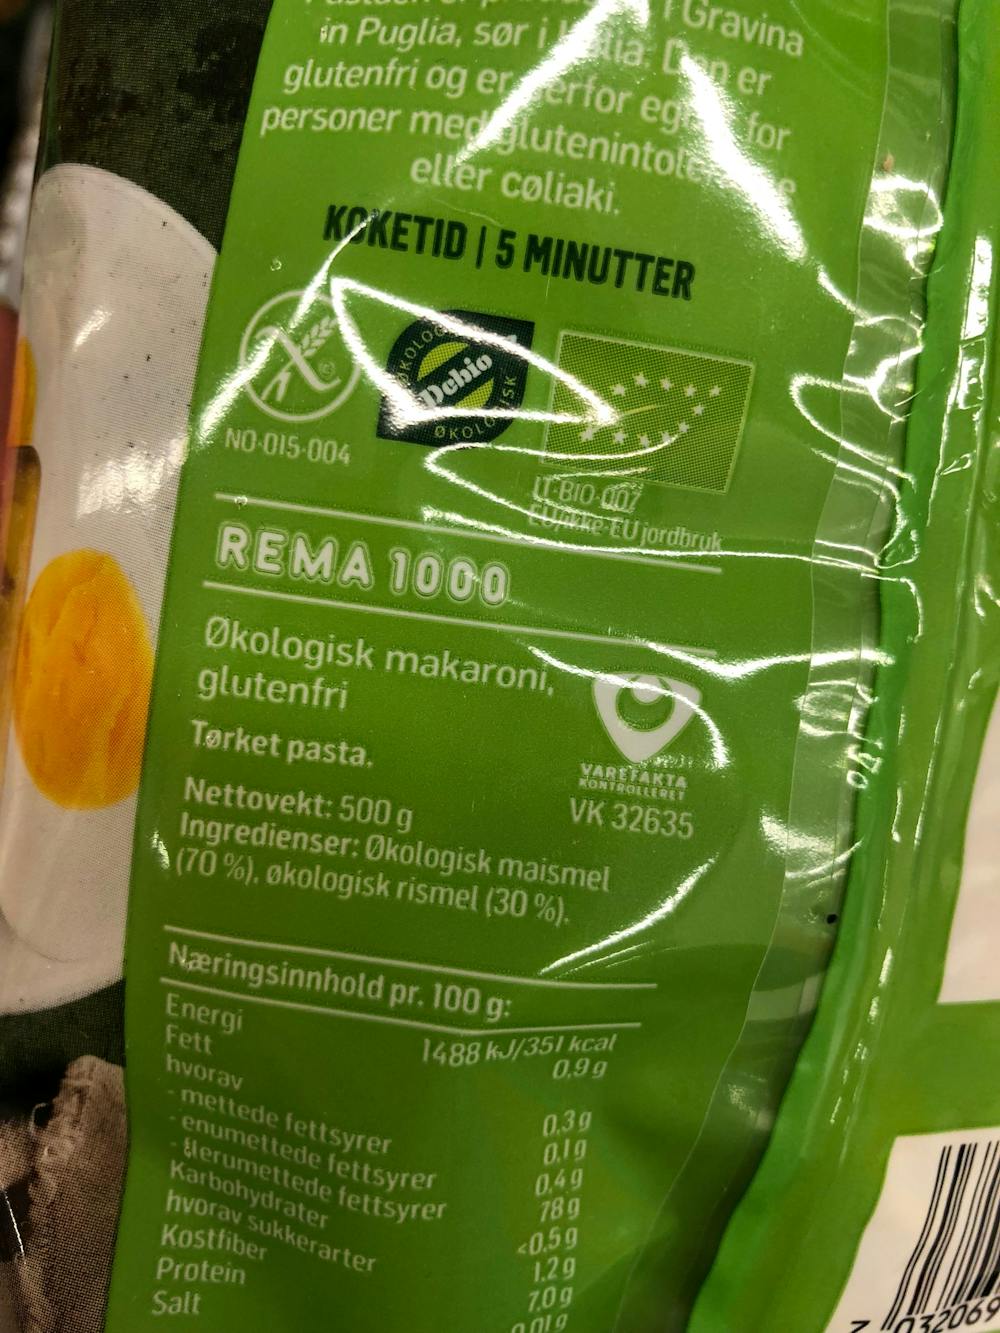 Ingredienslisten til Rema 1000 üten Økologisk makaroni glutenfri